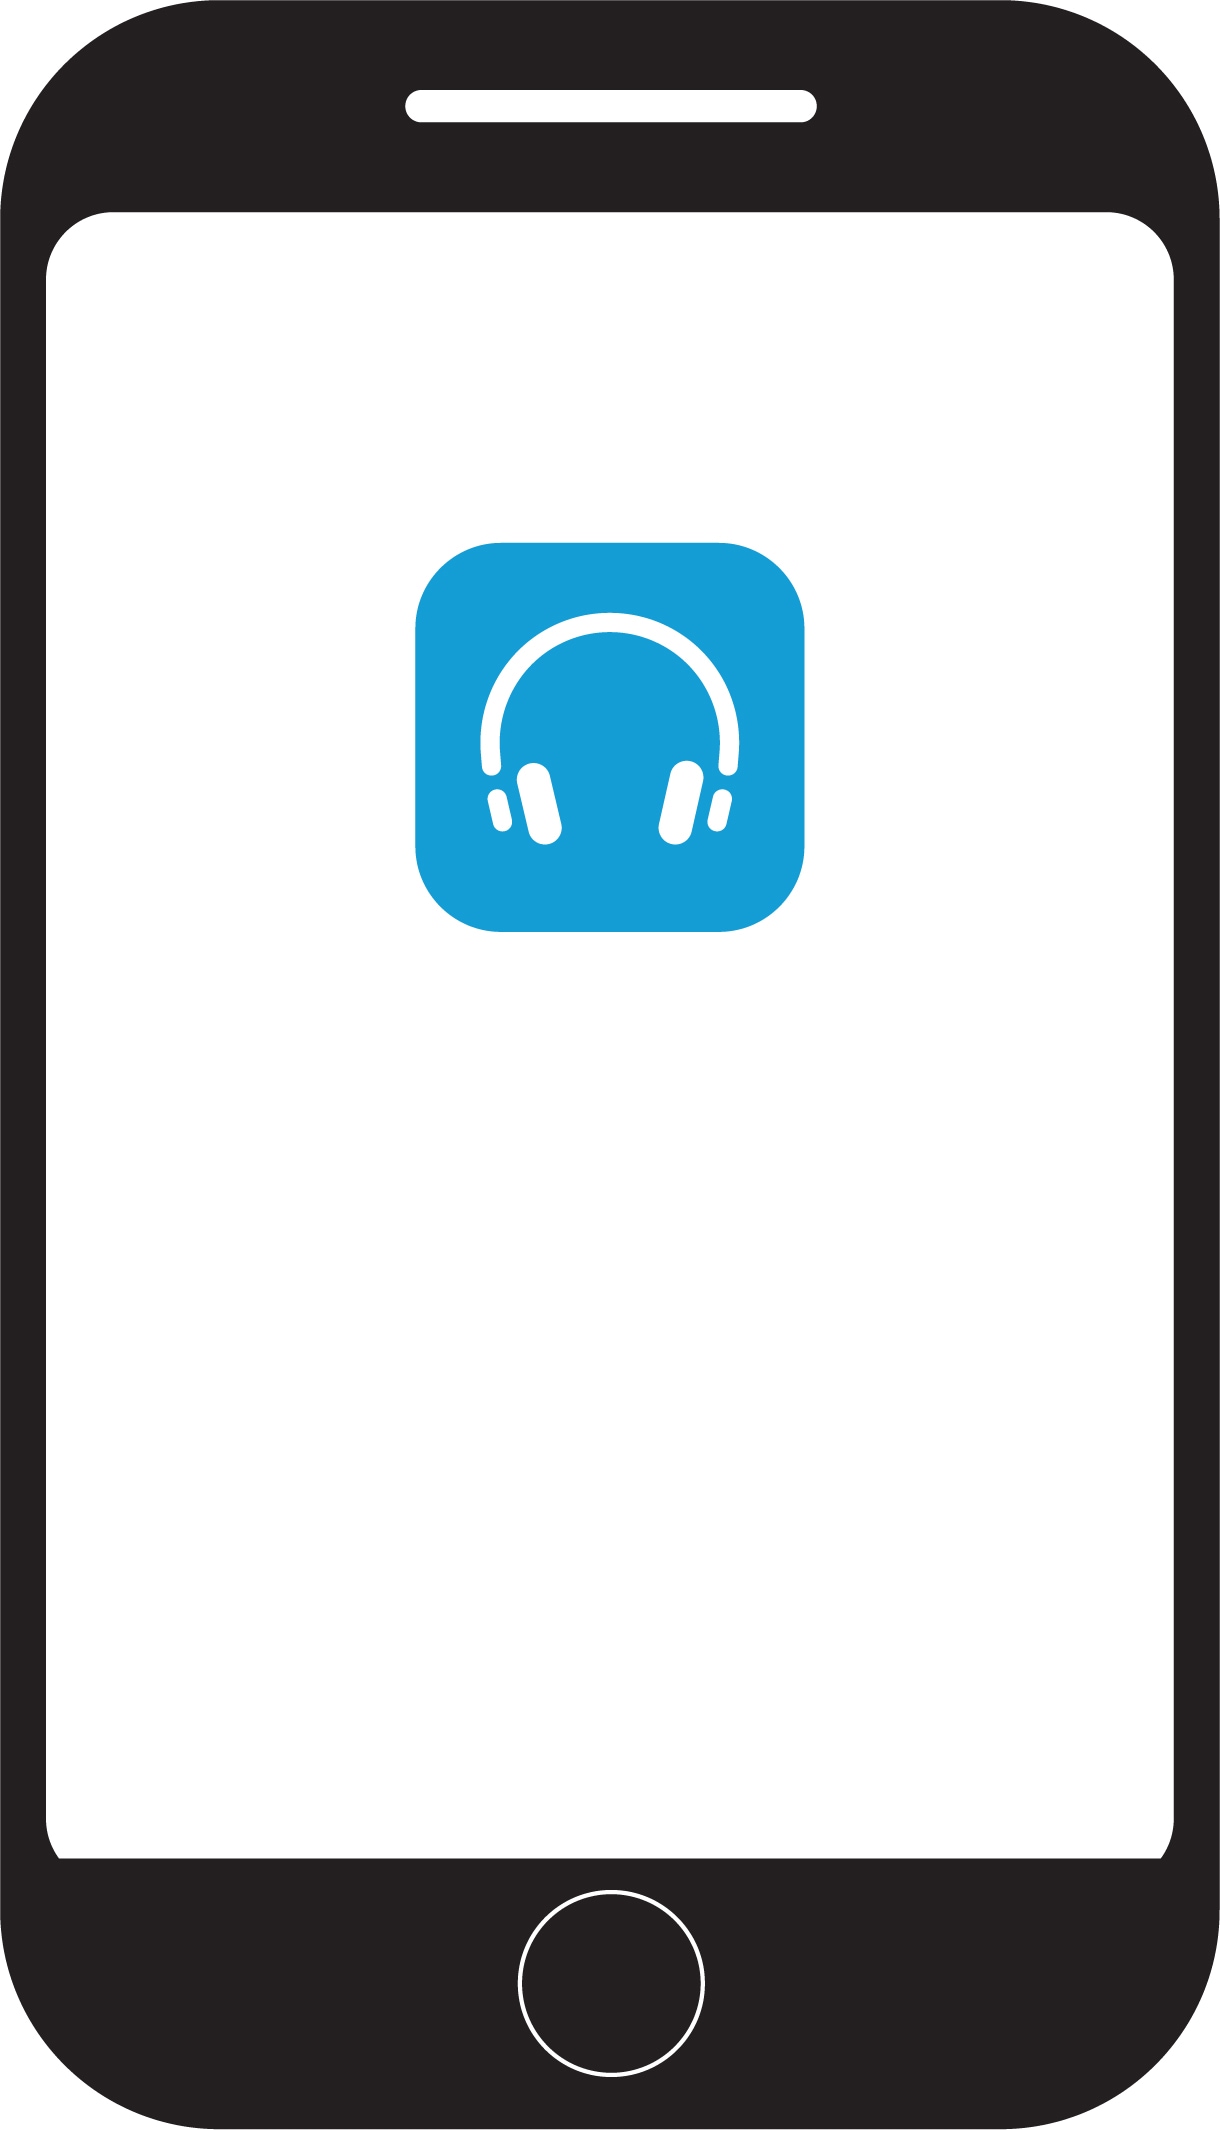 Program logo for Cisco hode telefoner på en mobil skjerm